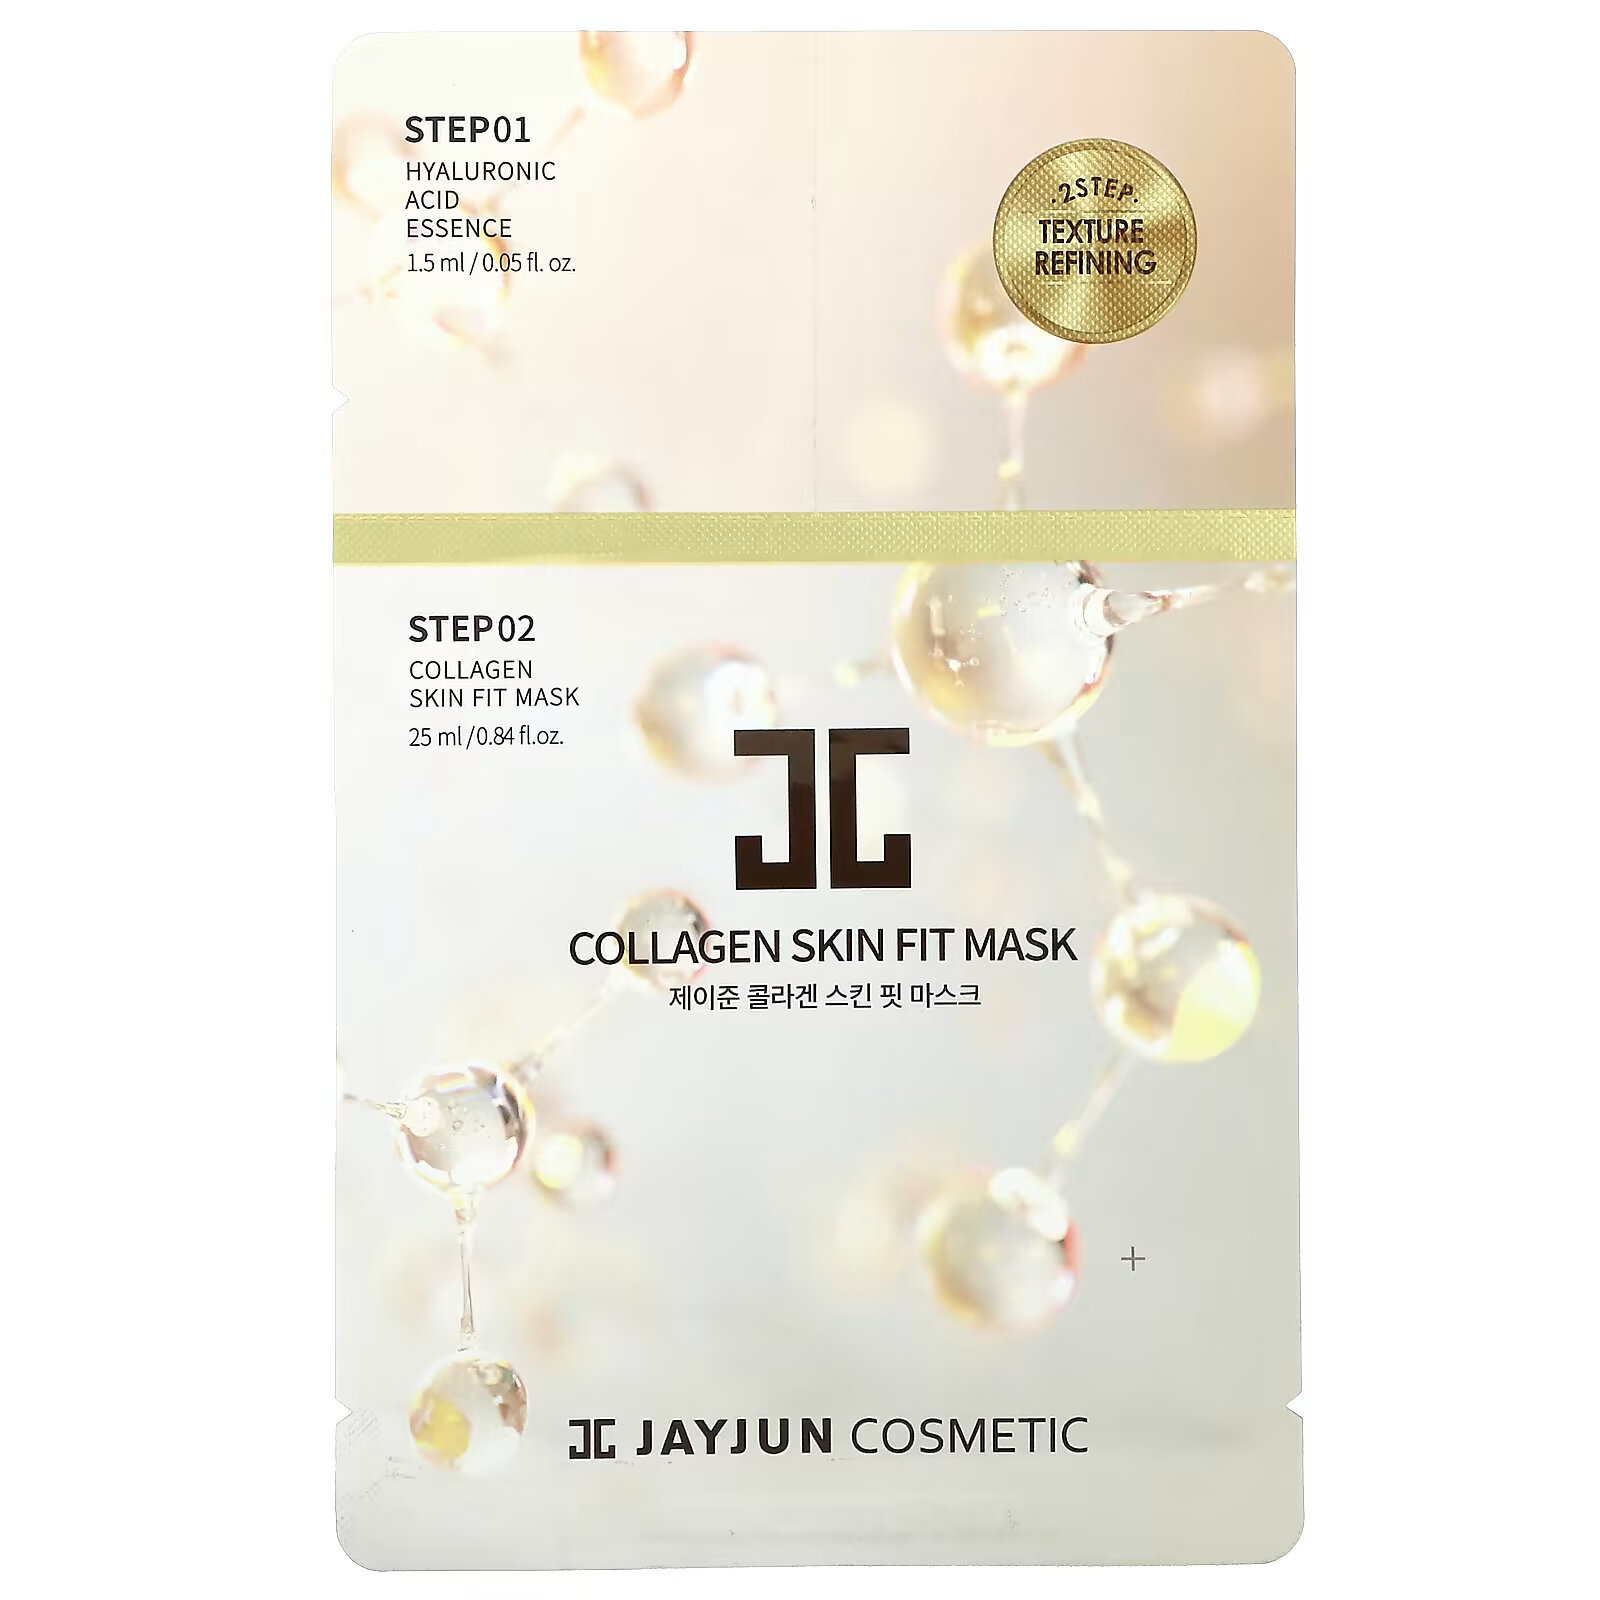 jayjun cosmetic трехфазная увлажняющая маска 1 набор Jayjun Cosmetic, 2-ступенчатая маска для улучшения текстуры кожи, 1 набор